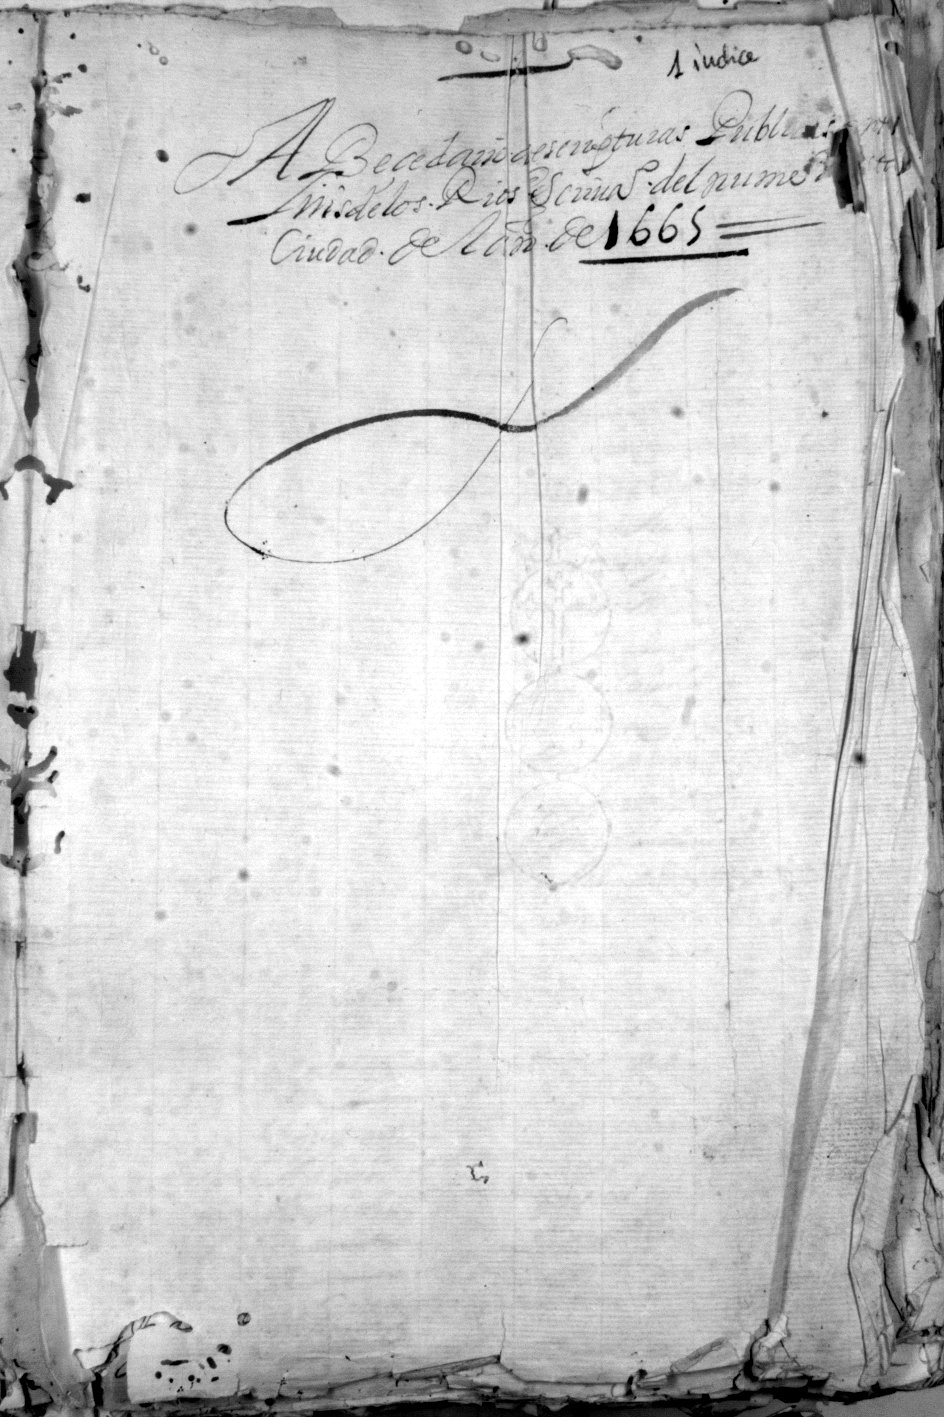 Registro de Luis de los Ríos, Murcia de 1665.